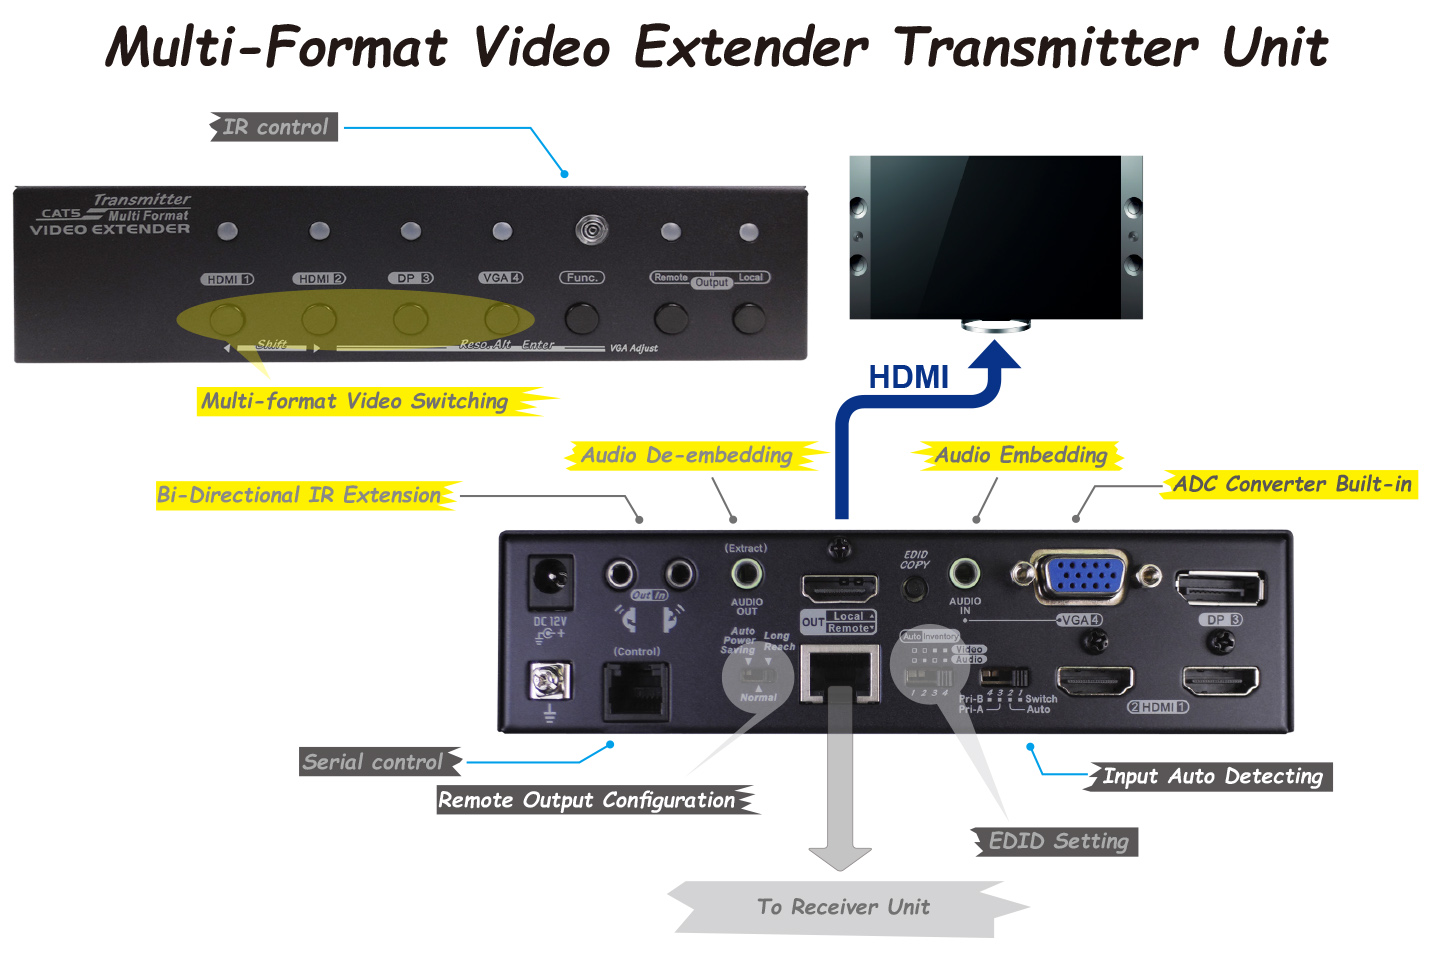 Multi-Format Video Extender Transmitter Unit